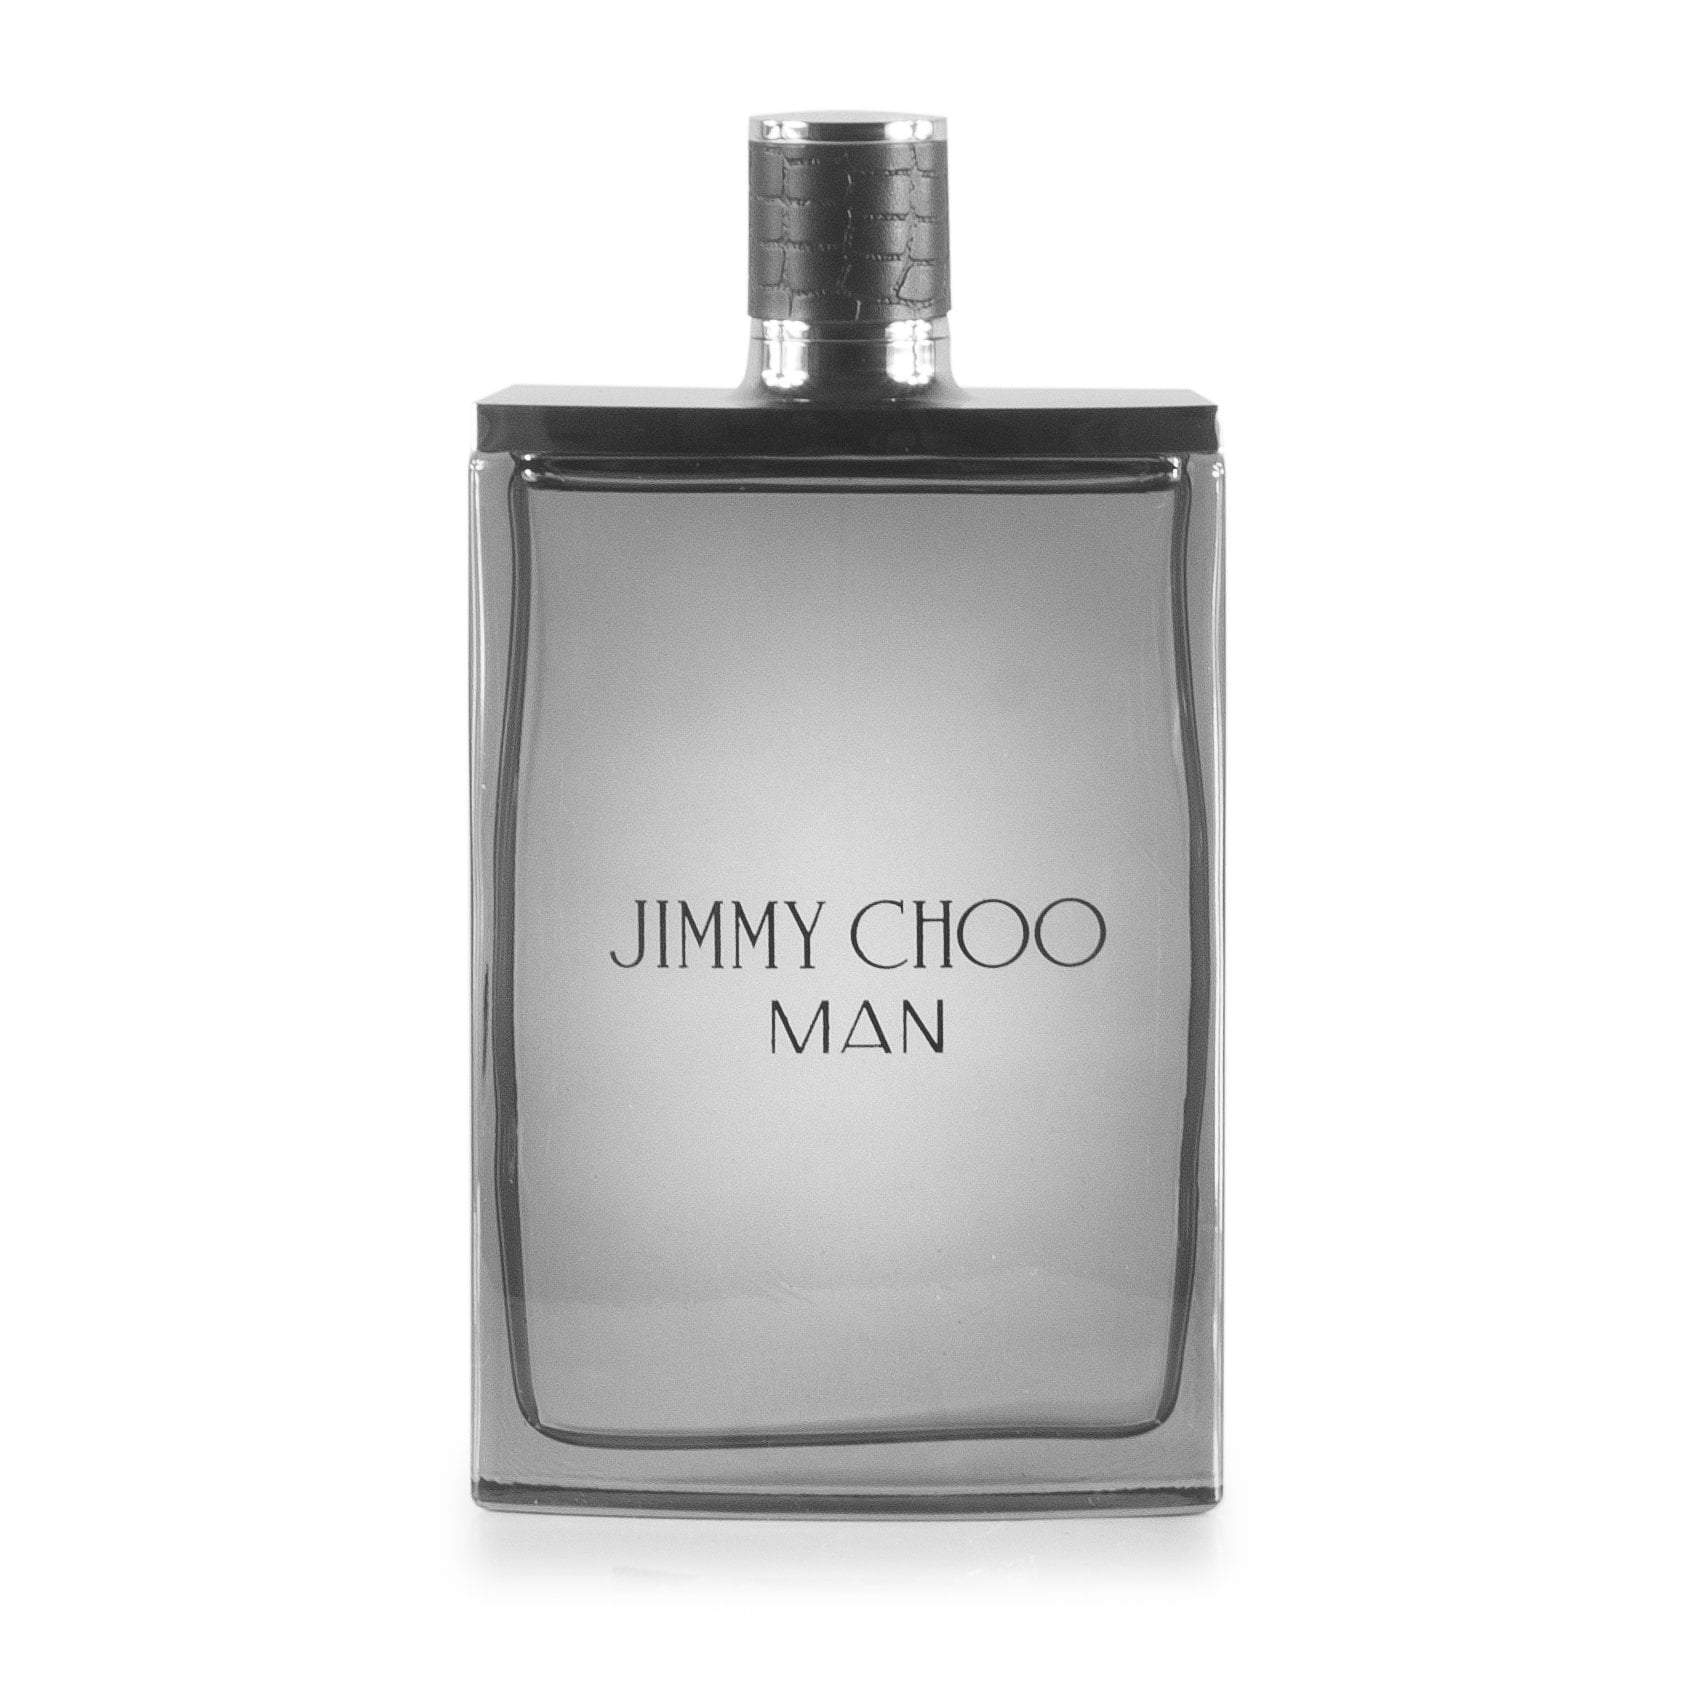 Jimmy Choo Man Eau de Toilette Spray for Men by Jimmy Choo, Product image 5